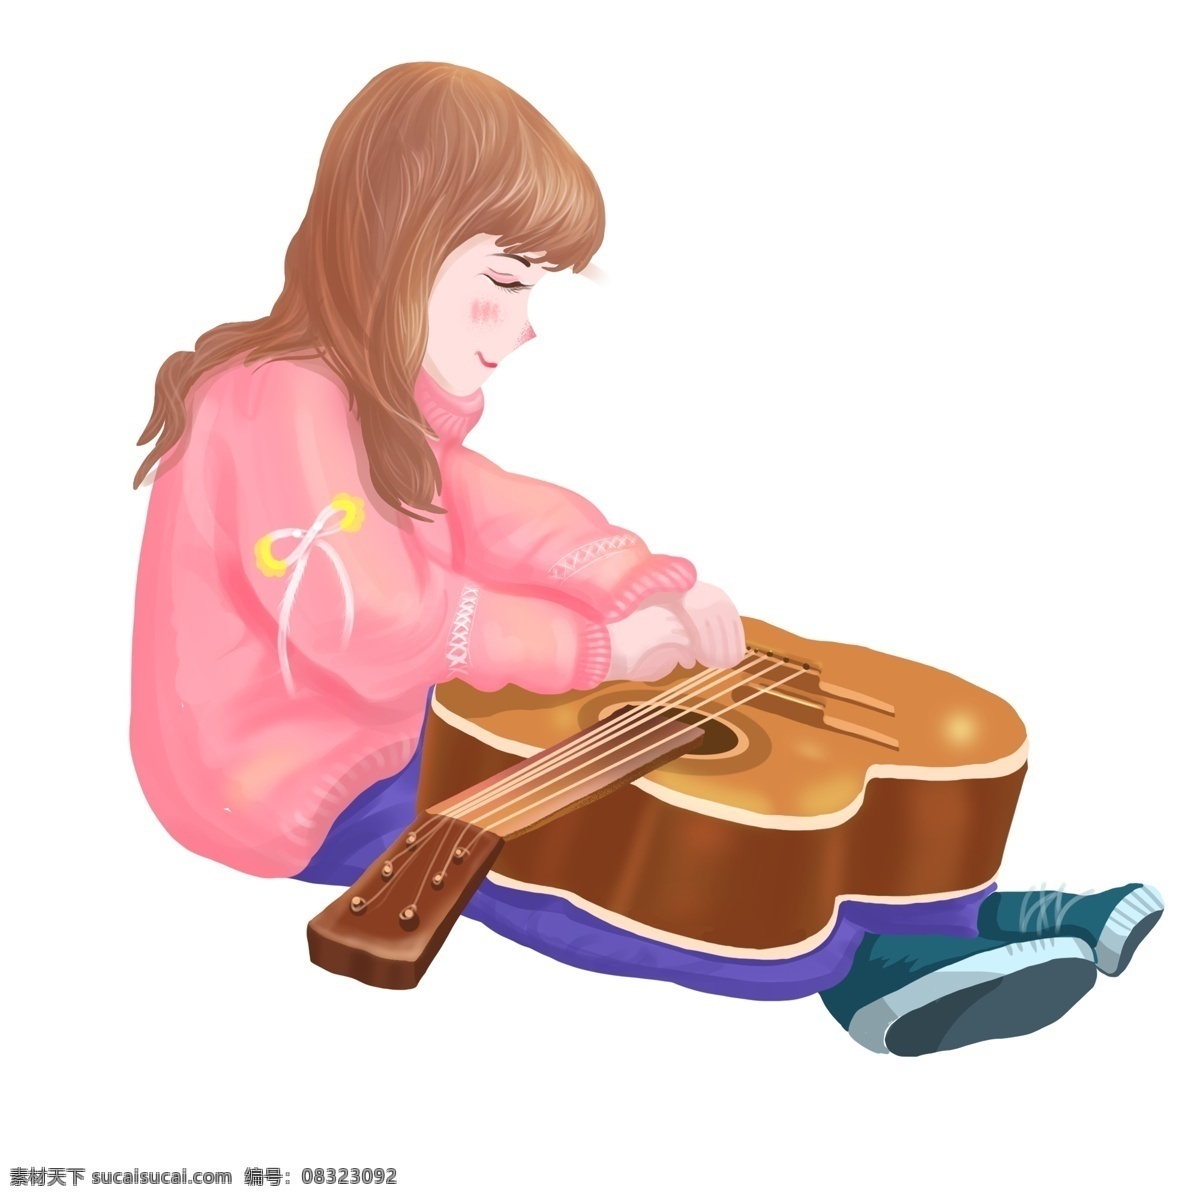 手绘 文艺 吉他 女孩 卡通 插画 女生 坐着 人物